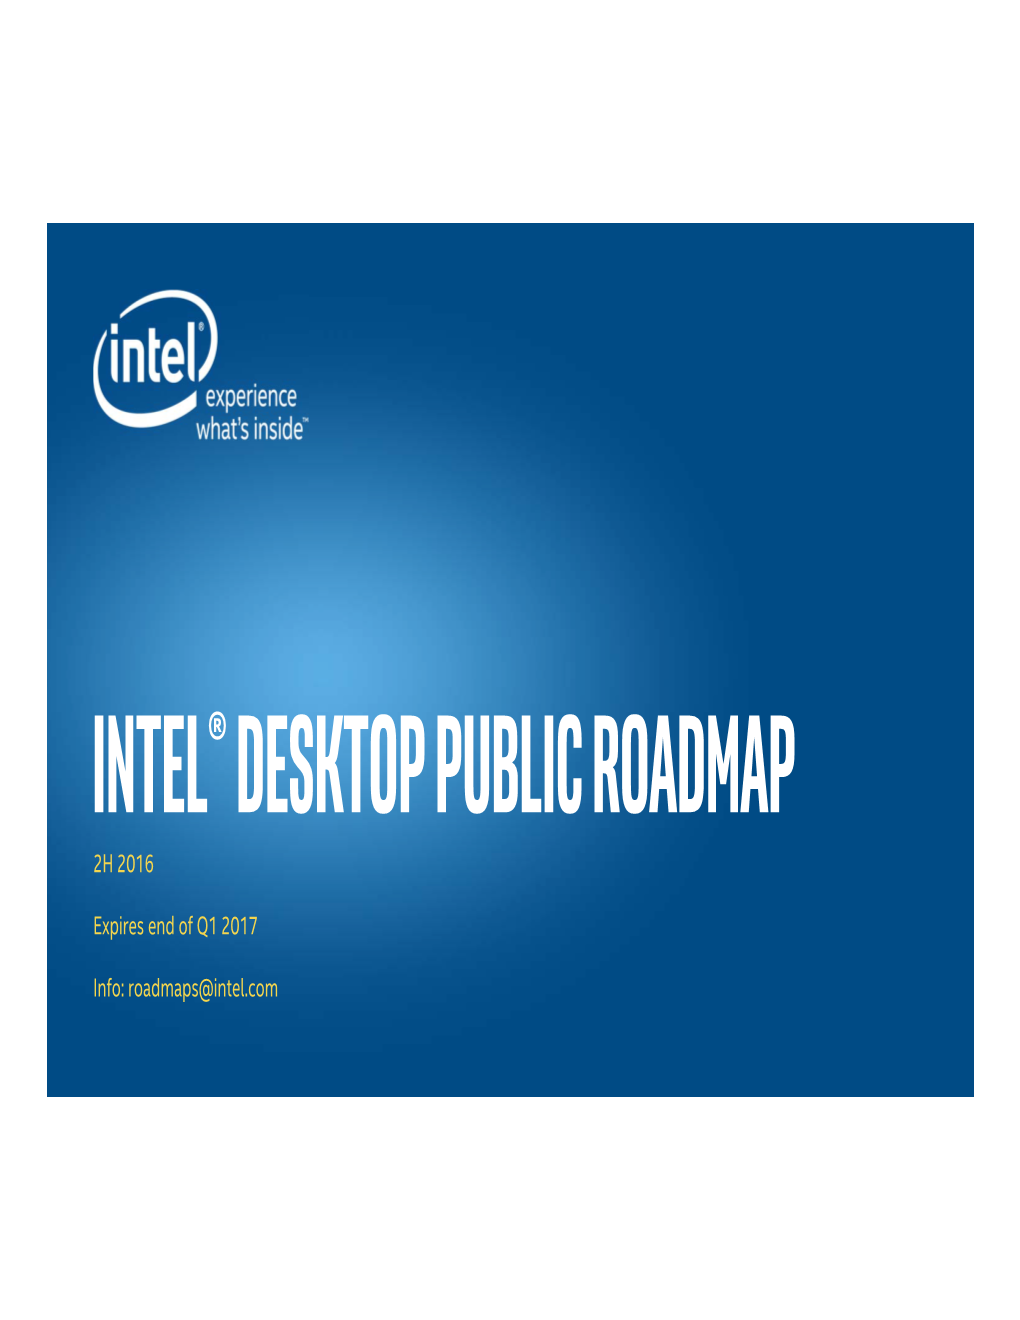 Intel Public Roadmap for Desktop, Mobile, Data Center